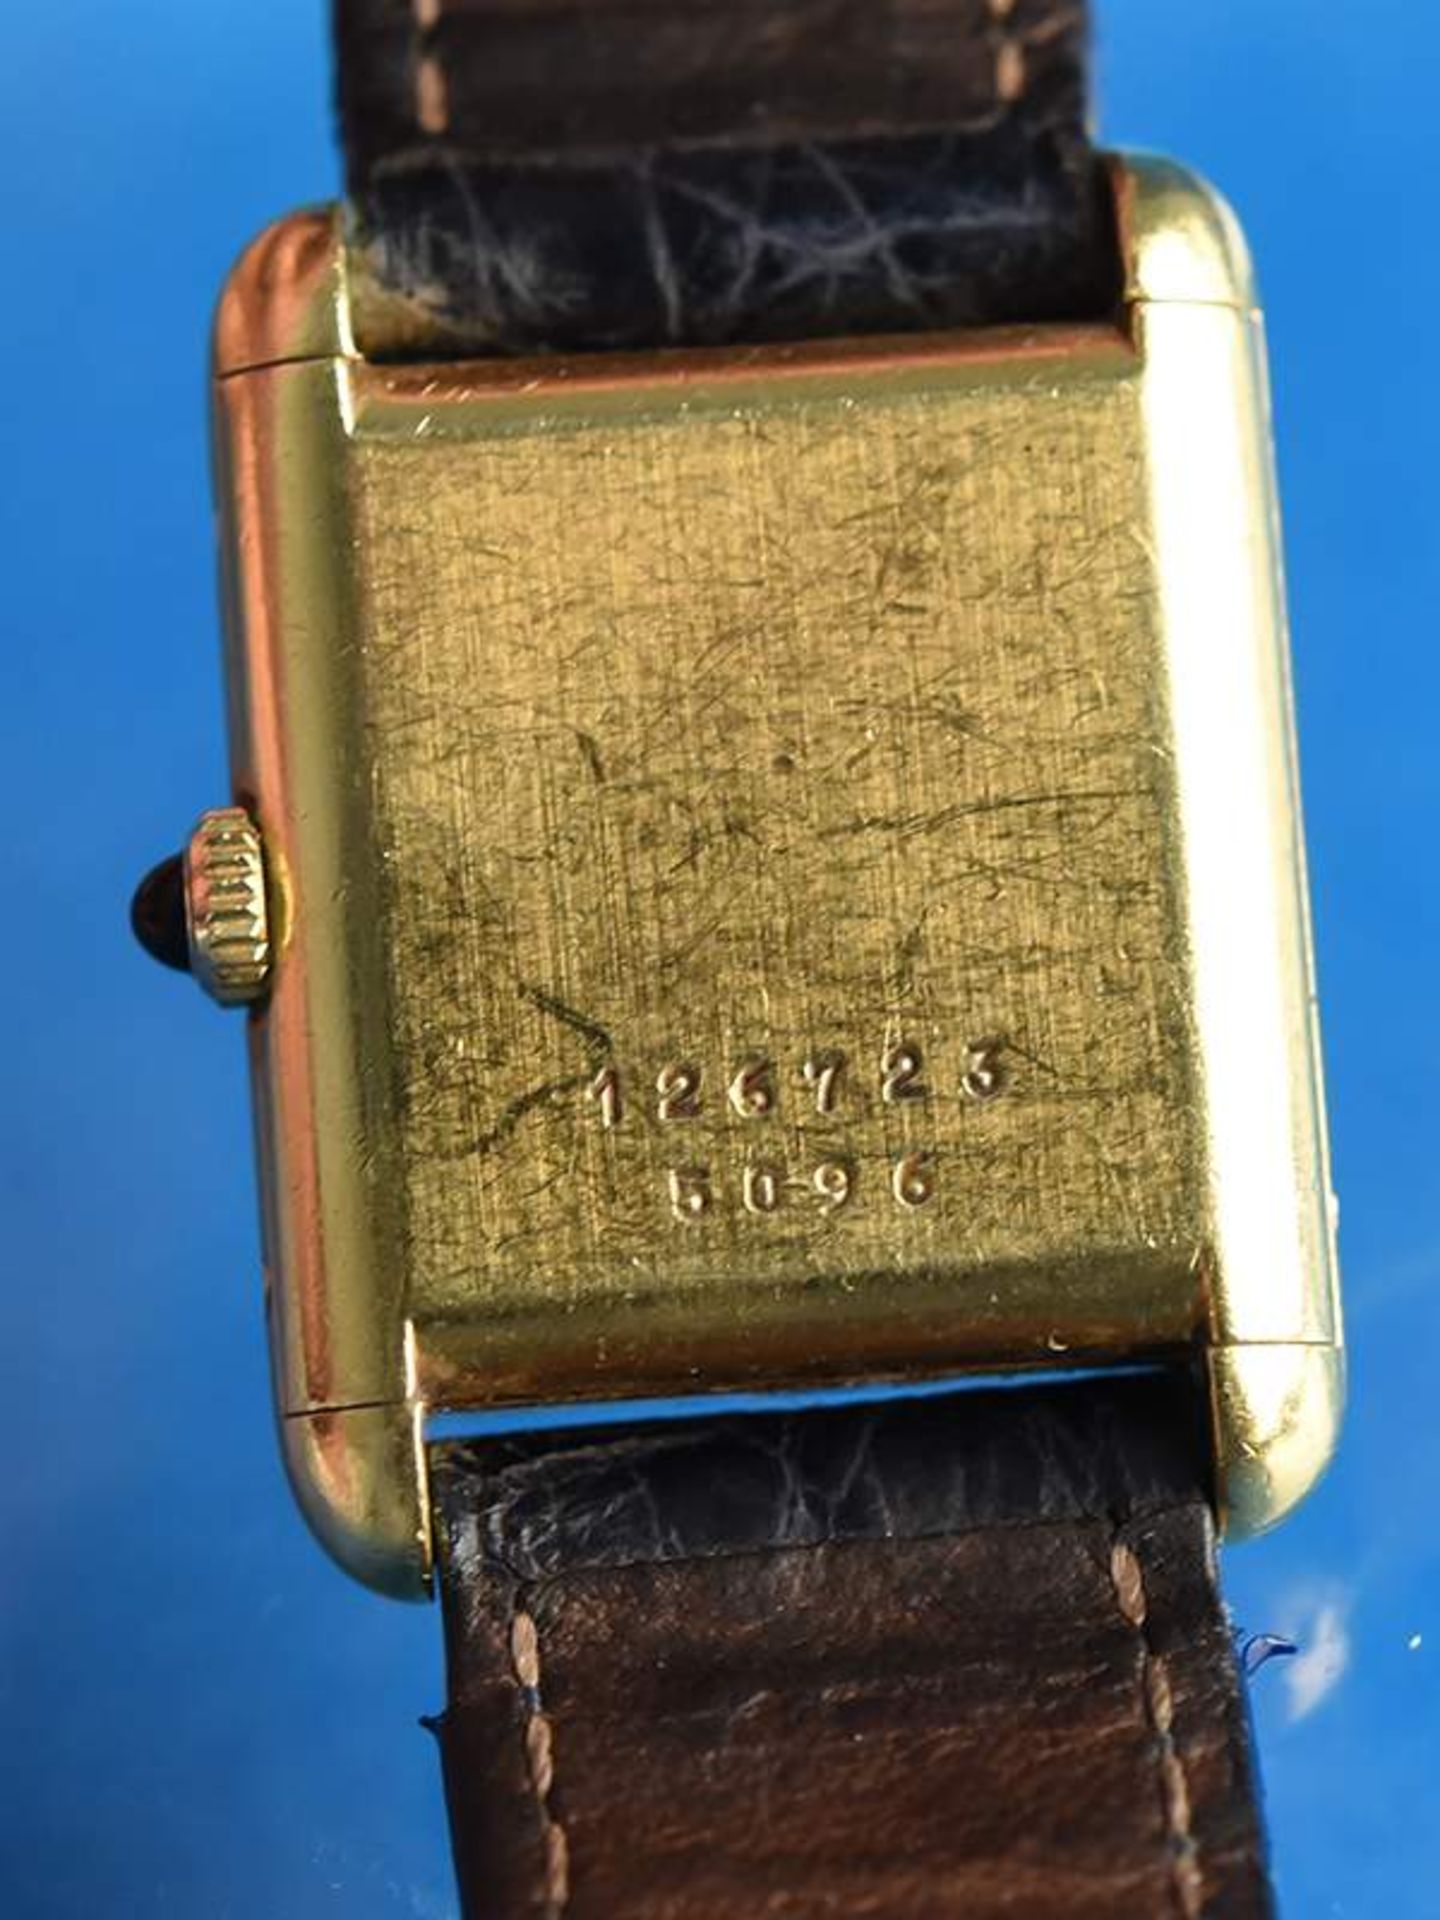 Damenarmbanduhr, bez. Chopard, Geneve, 20. Jh.750/-Gelbgoldgehäuse mit Lederarmband (deutliche - Bild 2 aus 2